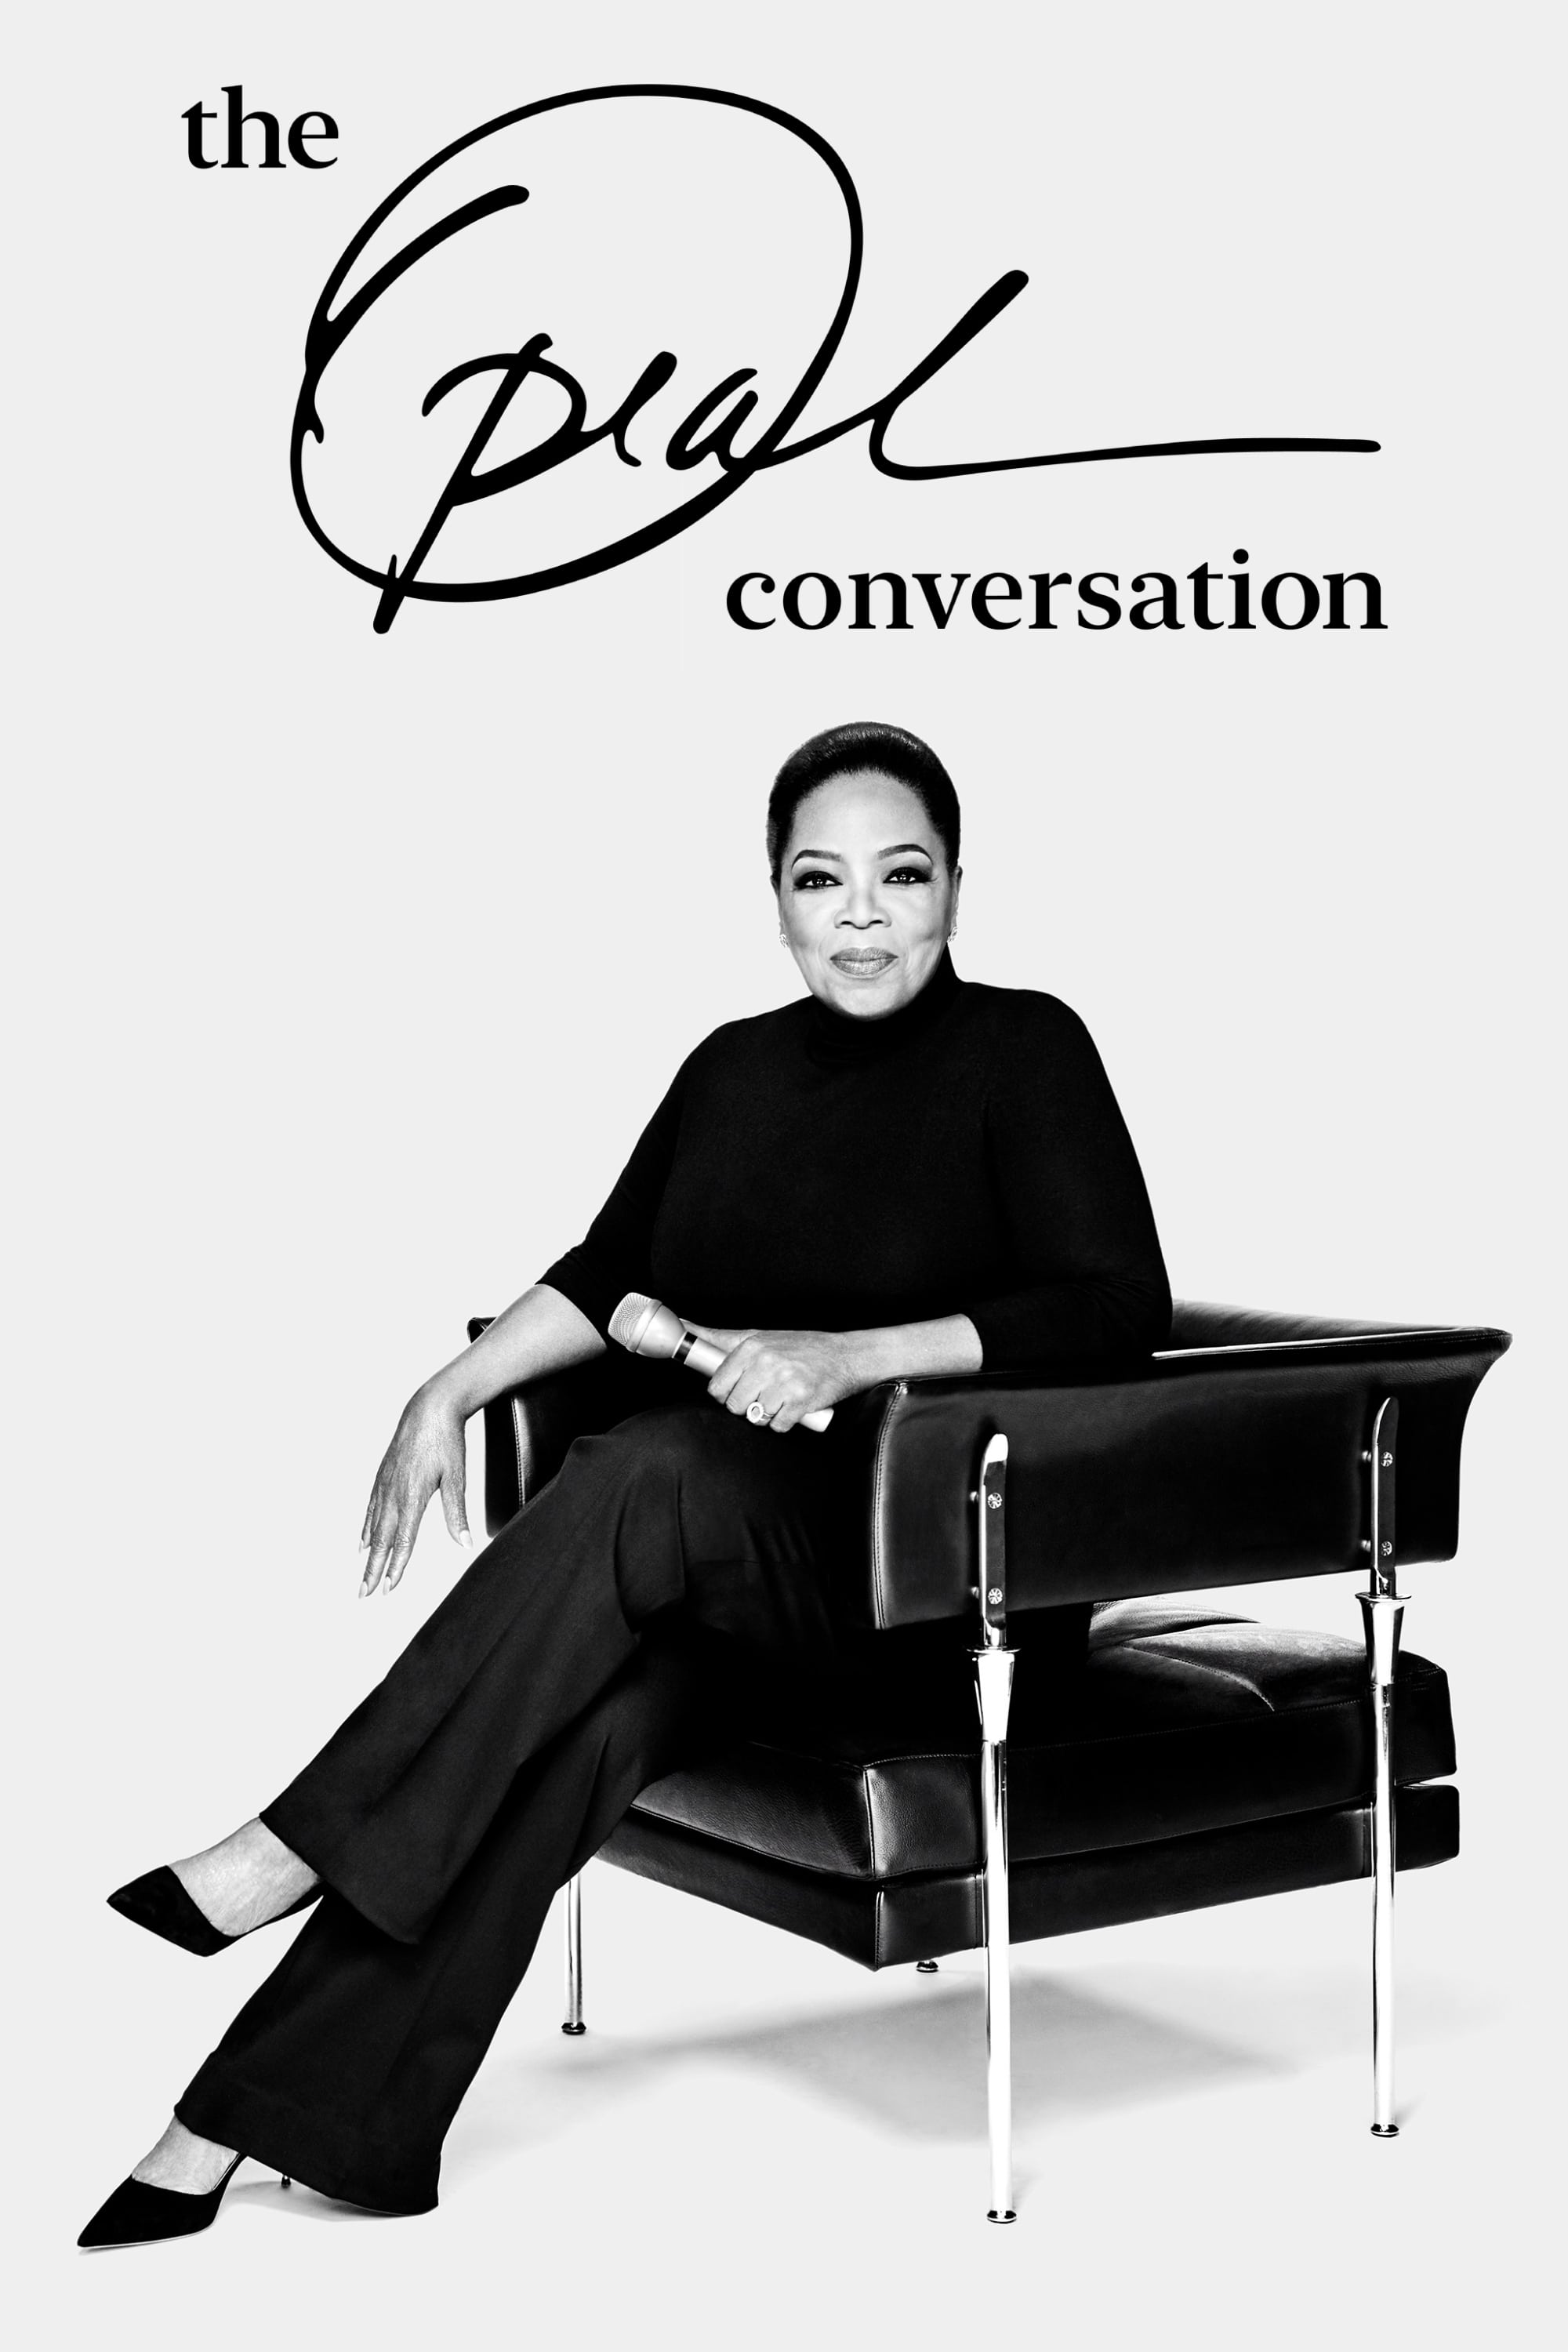 Caratula de The Oprah Conversation (La entrevista de Oprah) 